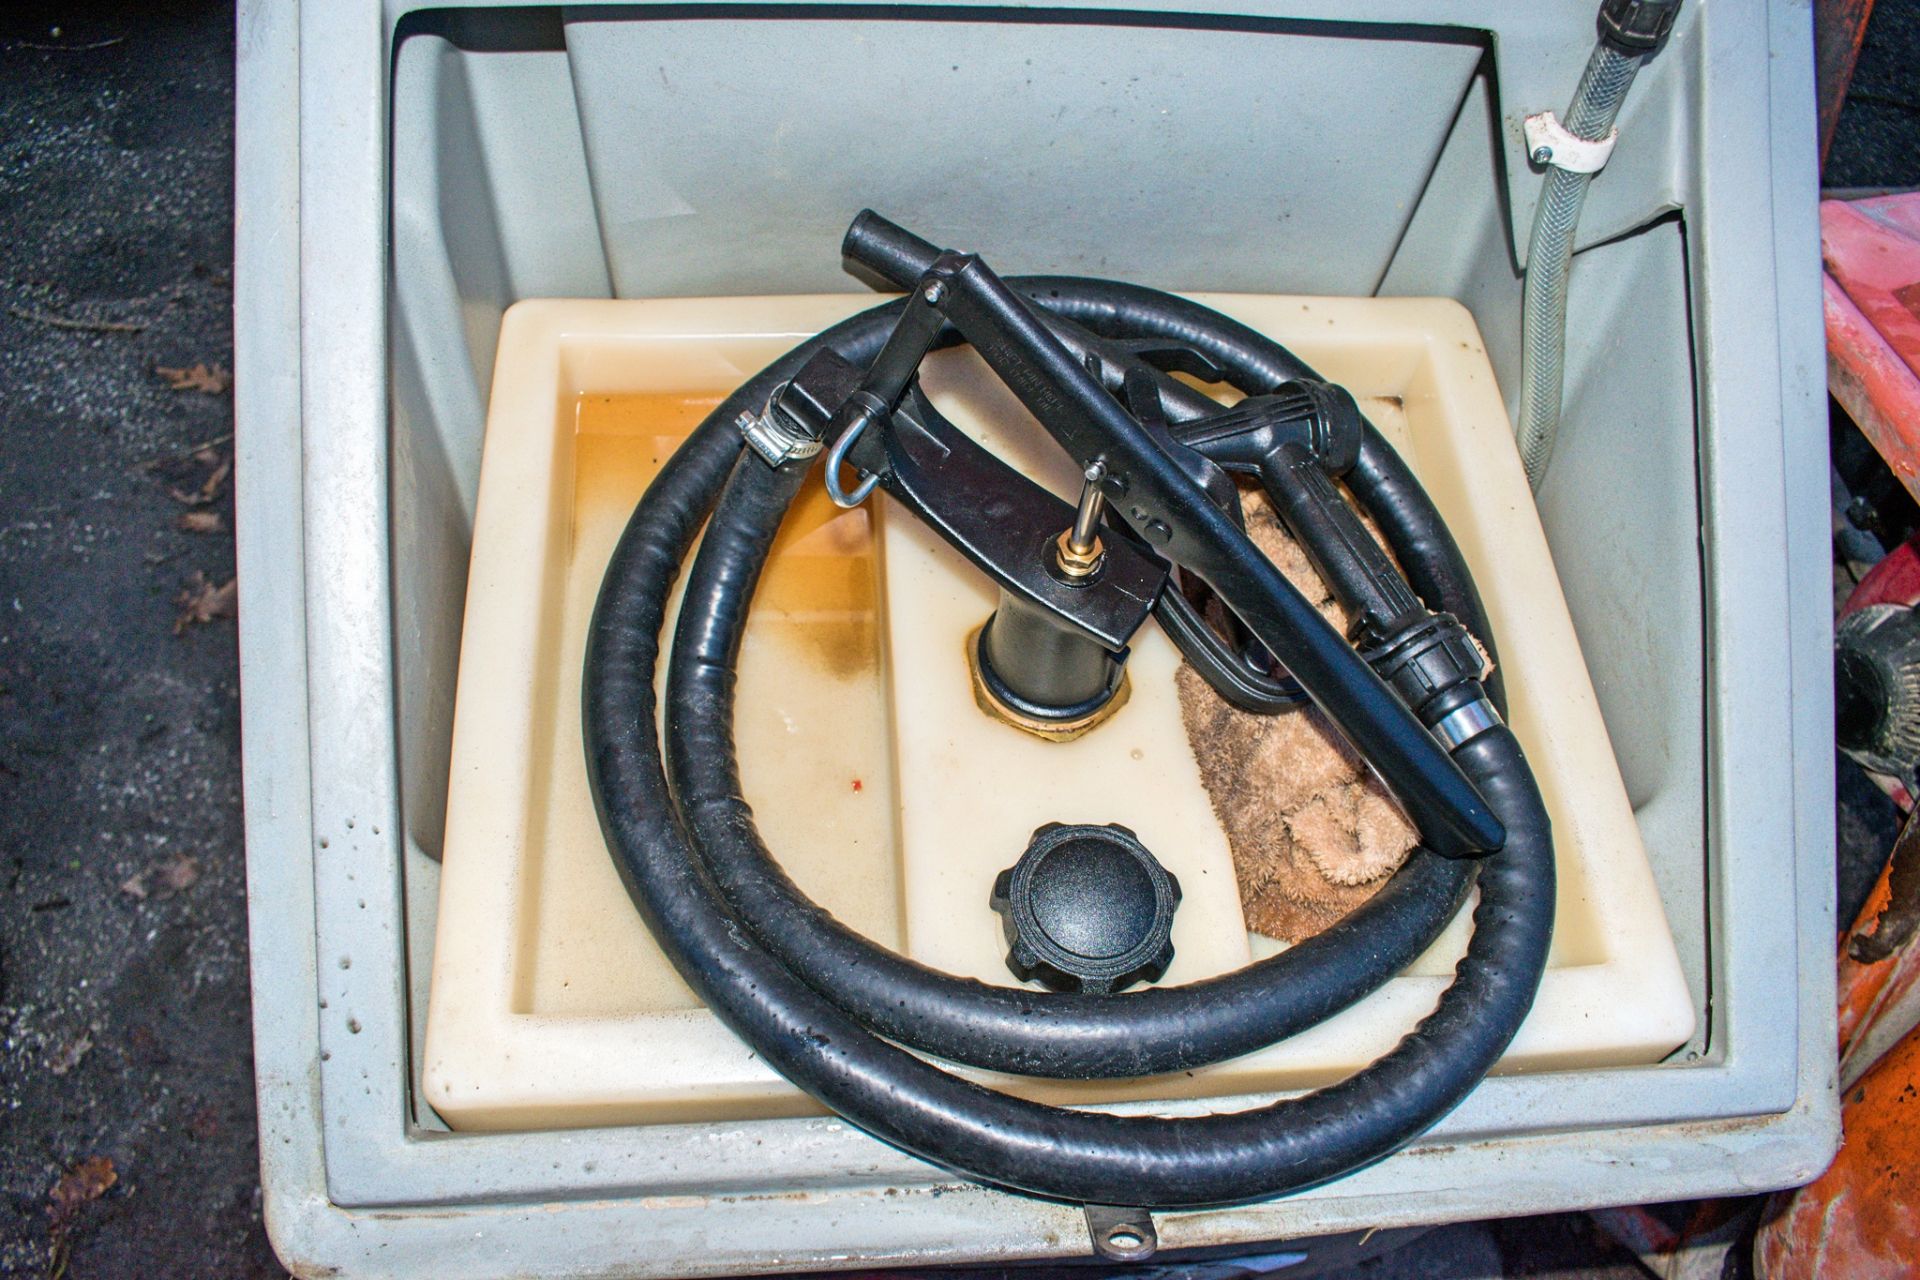 Western Kaddi 100 litre fuel bowser c/w manual pump, delivery hose & nozzle - Image 2 of 2